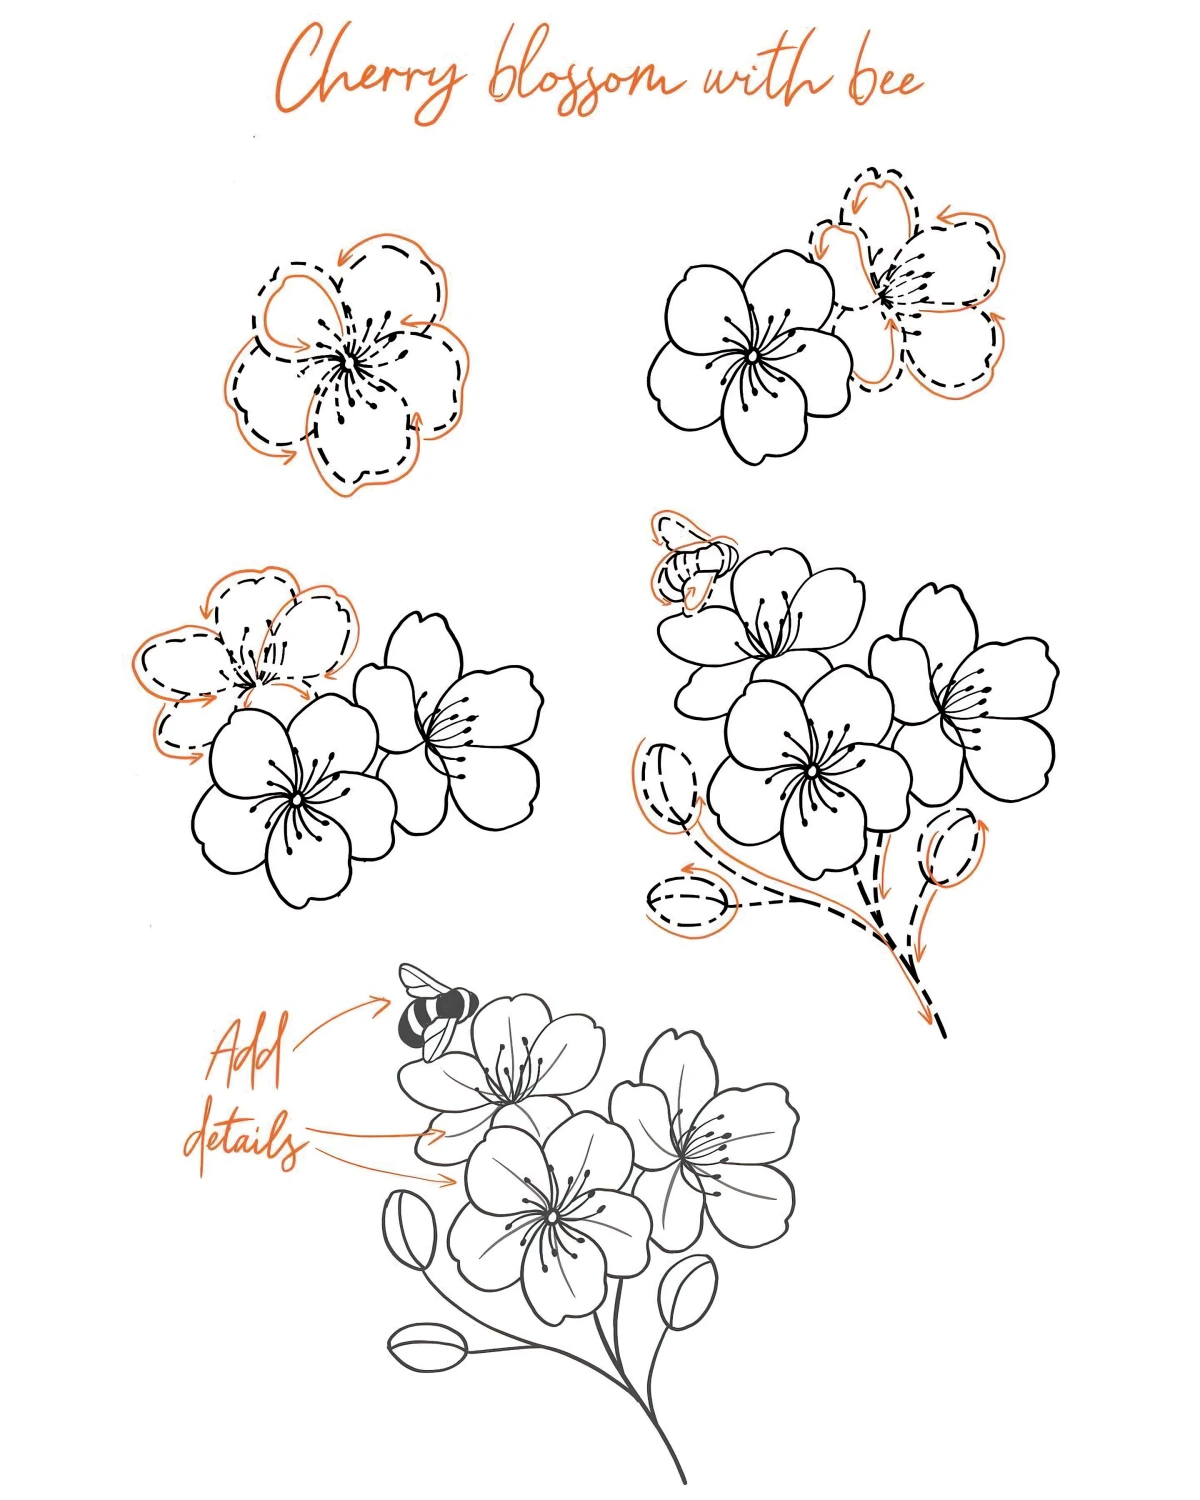 comment dessiner une fleur de cerisier pas a pas instructions blanc et noir